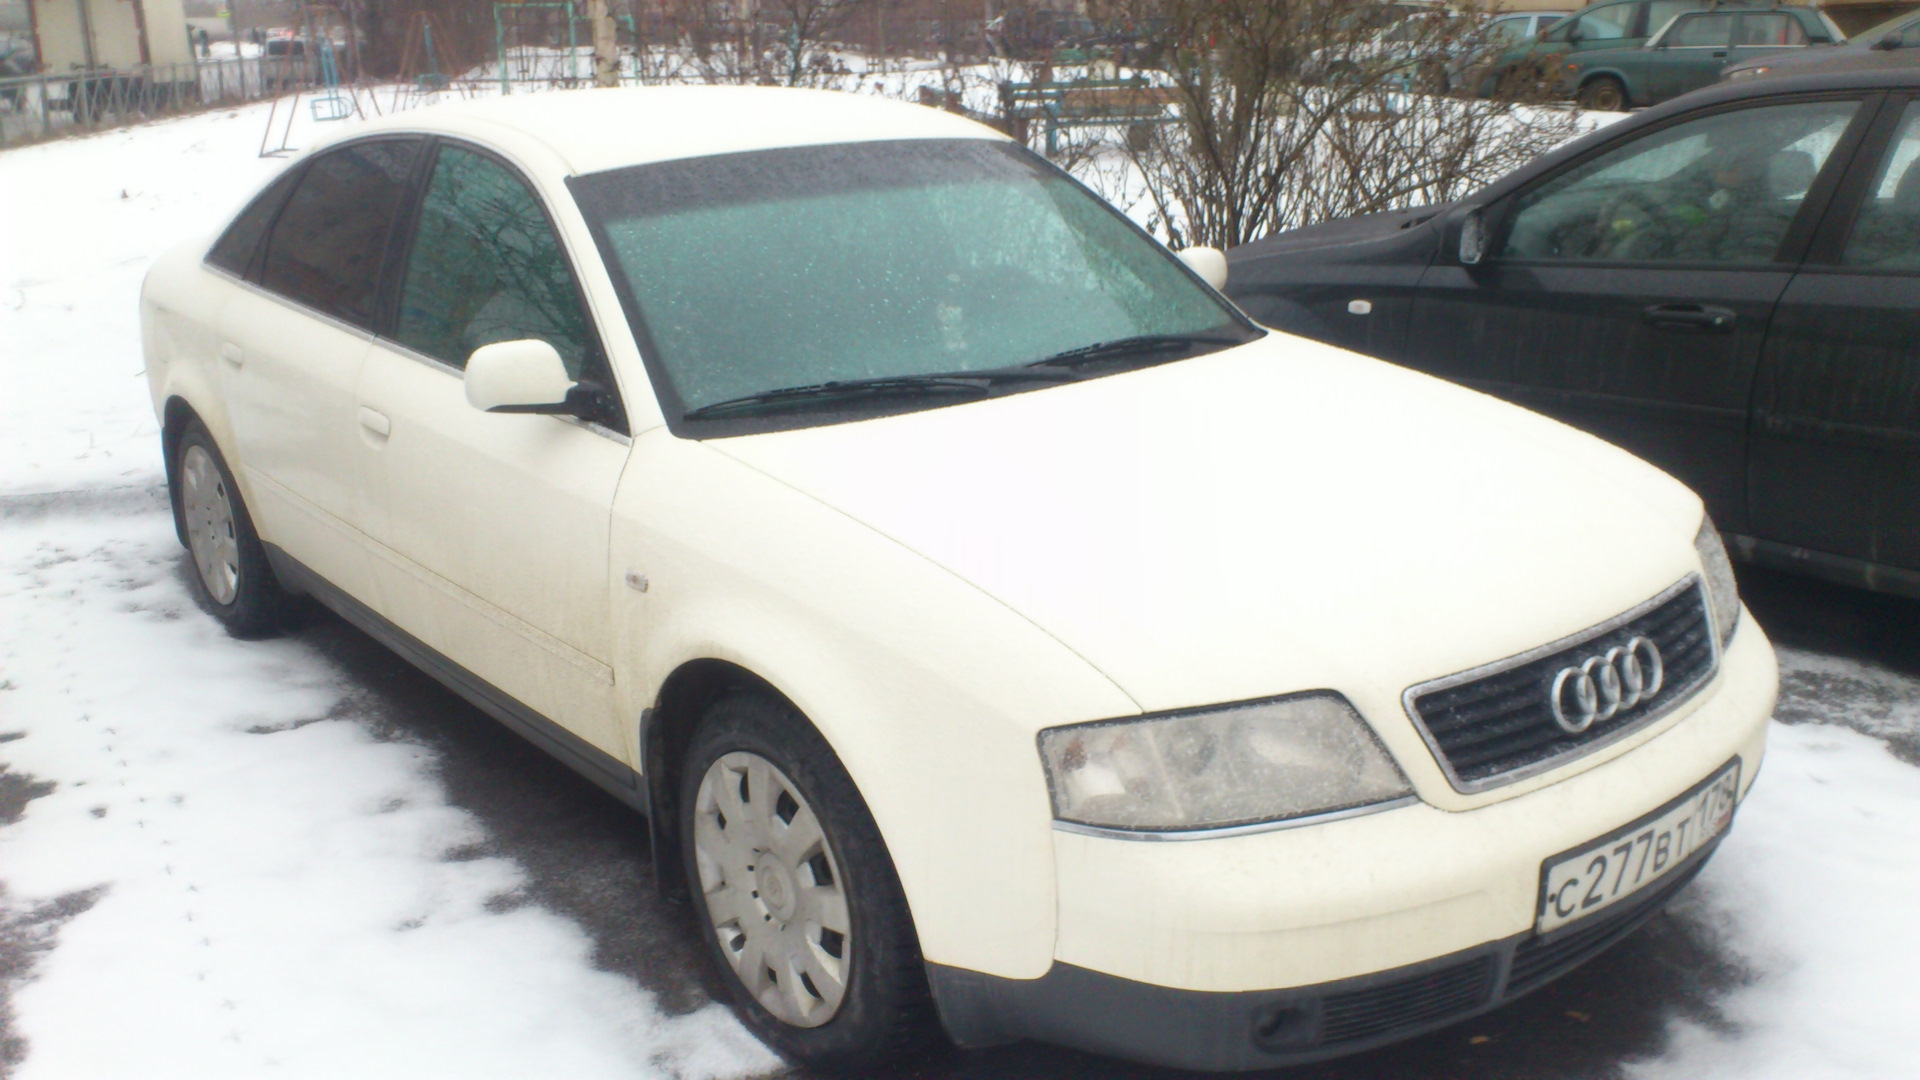 06 1997. A6 1997. Белая a6 1997. Продажа Audi a6, 1997. Ауди а6 с 200 2010 г.в. белая фото.